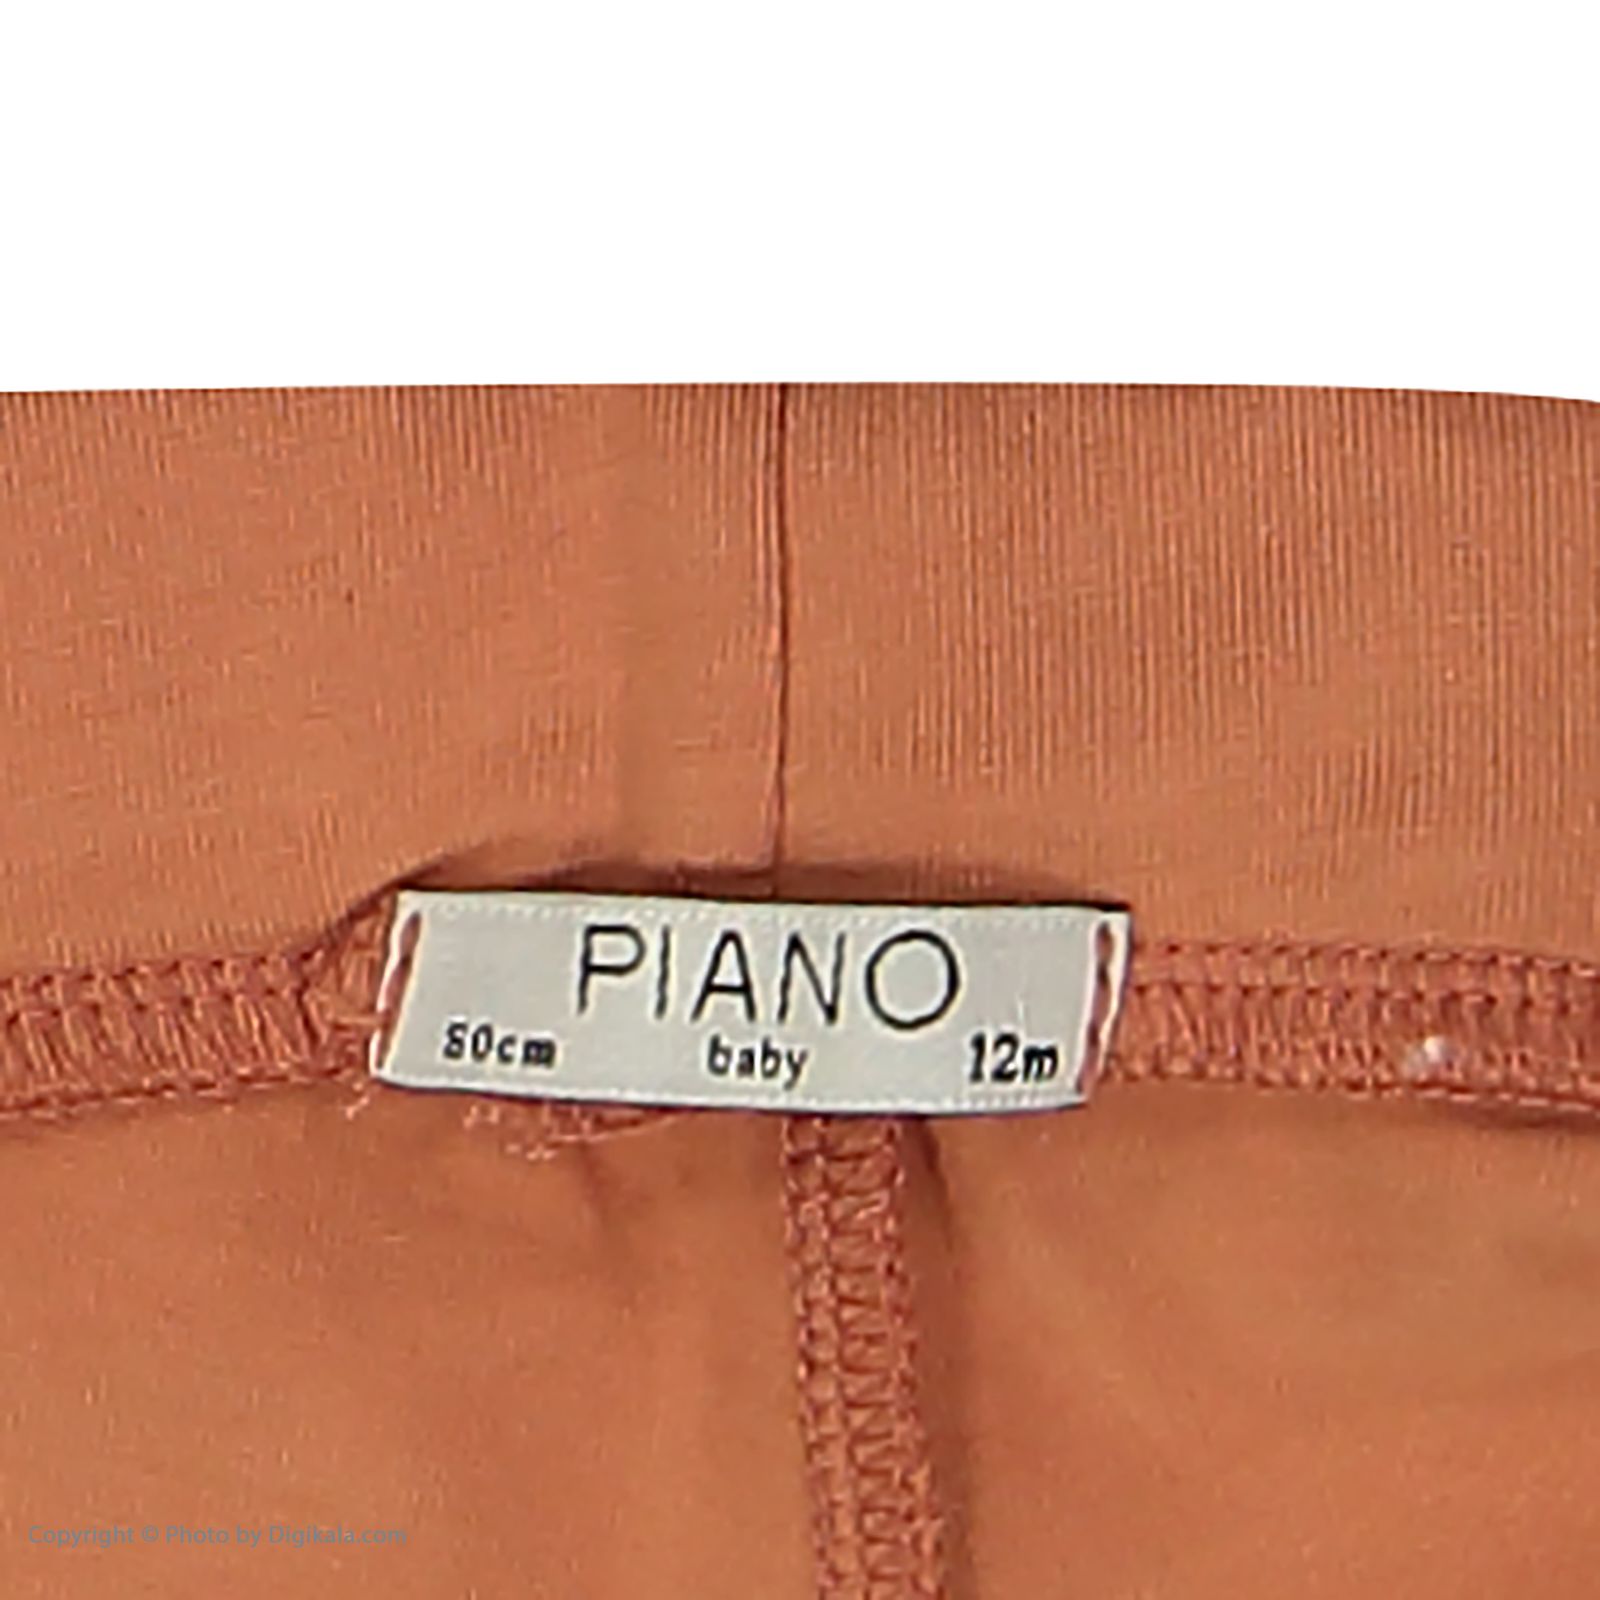 ست تی شرت و شلوار نوزادی دخترانه پیانو مدل 1097-20 -  - 9